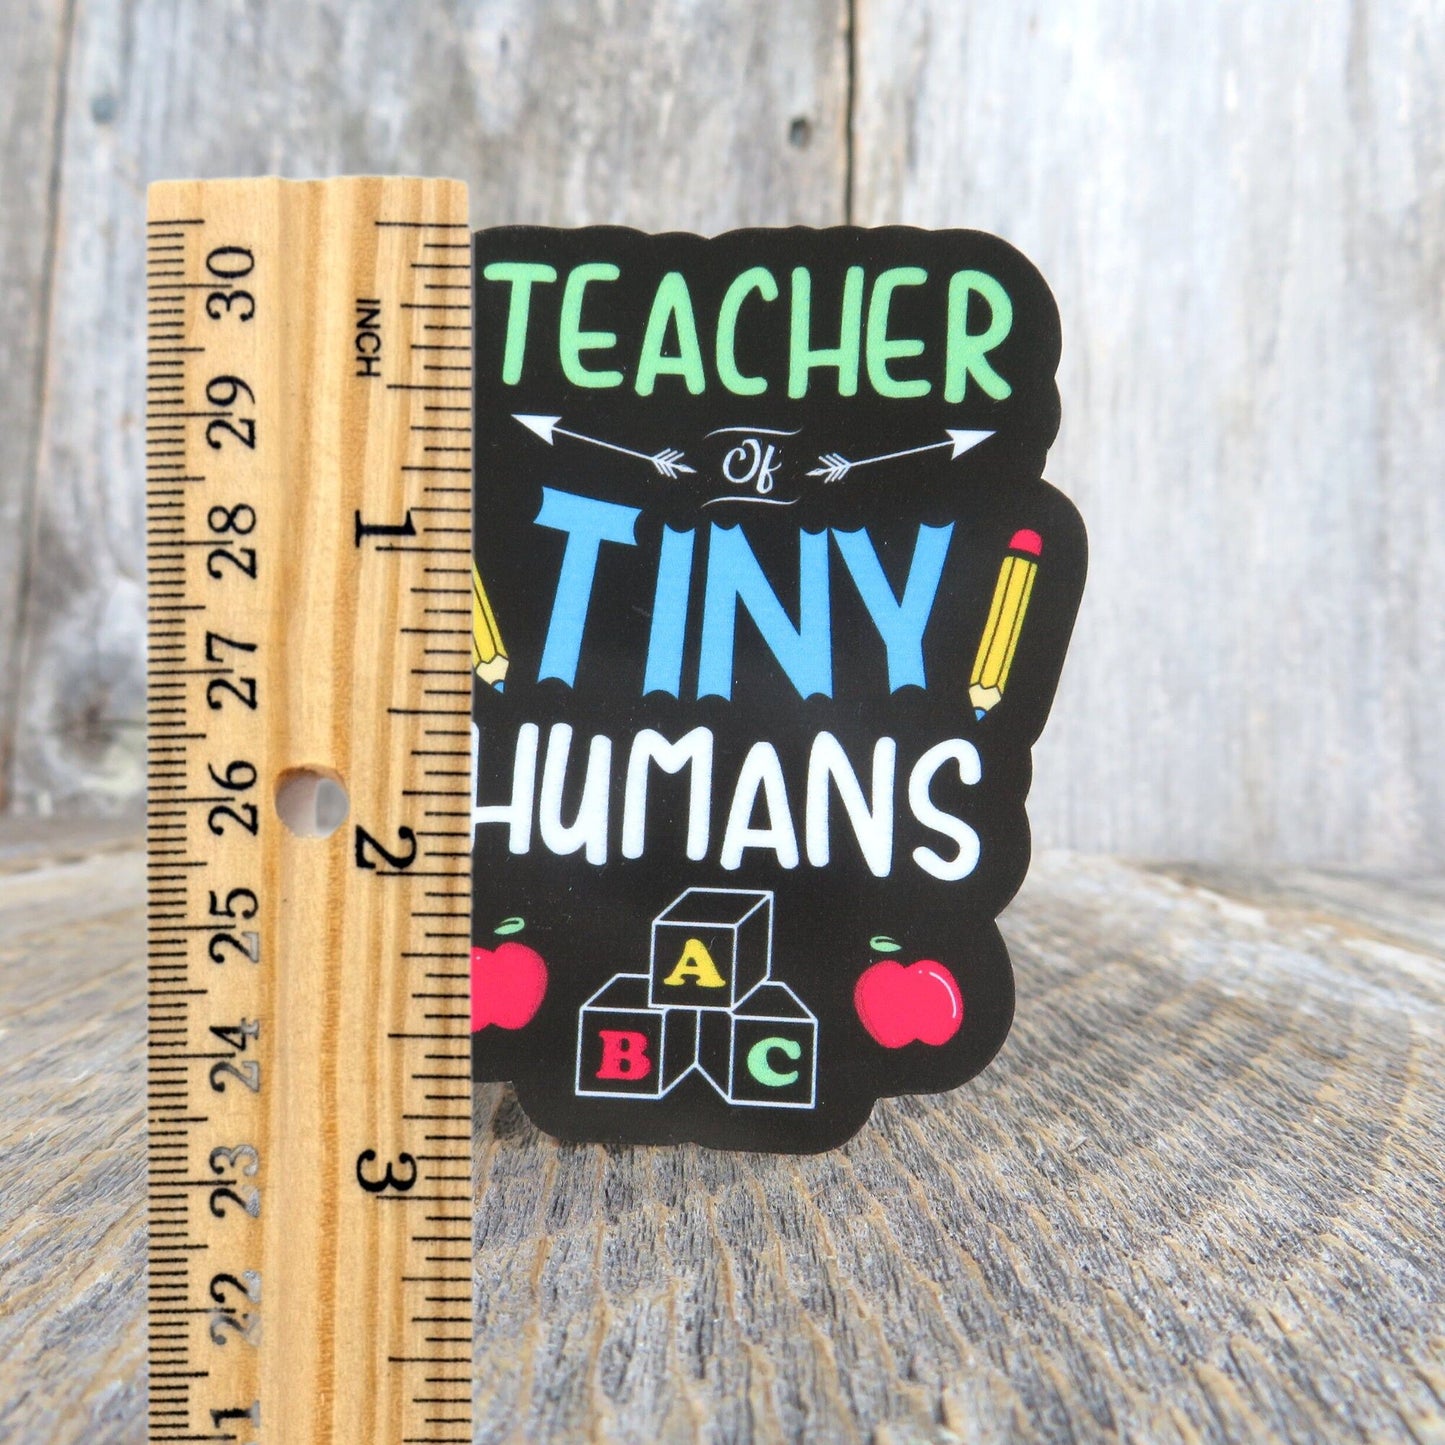 Teacher of Tiny Humans Sticker Teacher Preschool Kindergarten School Themed